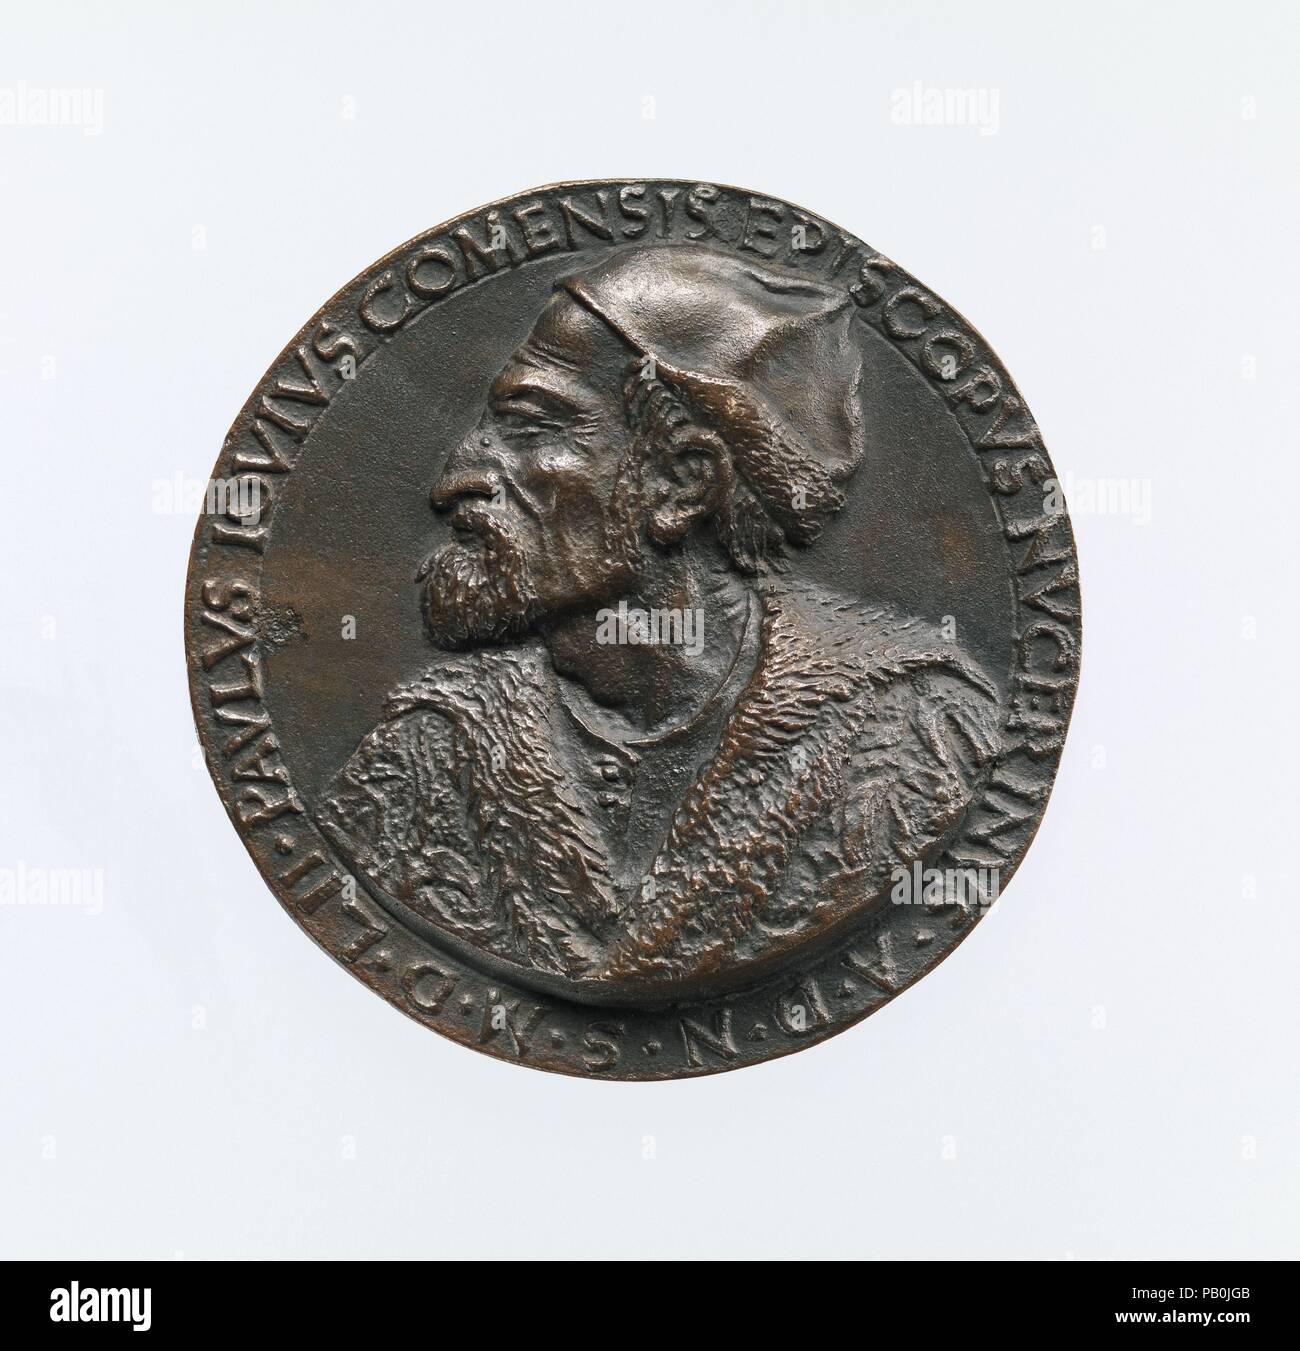 Portrait de Paolo Giovio médaille (avers) ; Giovio élever un homme d'une tombe (marche arrière). Artiste : Francesco da Sangallo (italien, 1494-1576). Dimensions : diam. 9,5 cm, au poids. 308,61 g.. Date : modèle ca. 1552 (probablement un plus tard exprimés). L'avers des médailles dépeint l'écrivain, historien, collectionneur et Paolo Giovio, connu pour le groupe de portraits d'hommes célèbres qu'il a assemblés dans sa villa près du lac de Côme ainsi que ses écrits sur l'histoire contemporaine, y compris la vie des hommes illustres. L'inverse de Paolo Giovio's medal lui montre la tenue d'un grand livre sous l'épaule gauche, tandis qu'il aide un n Banque D'Images